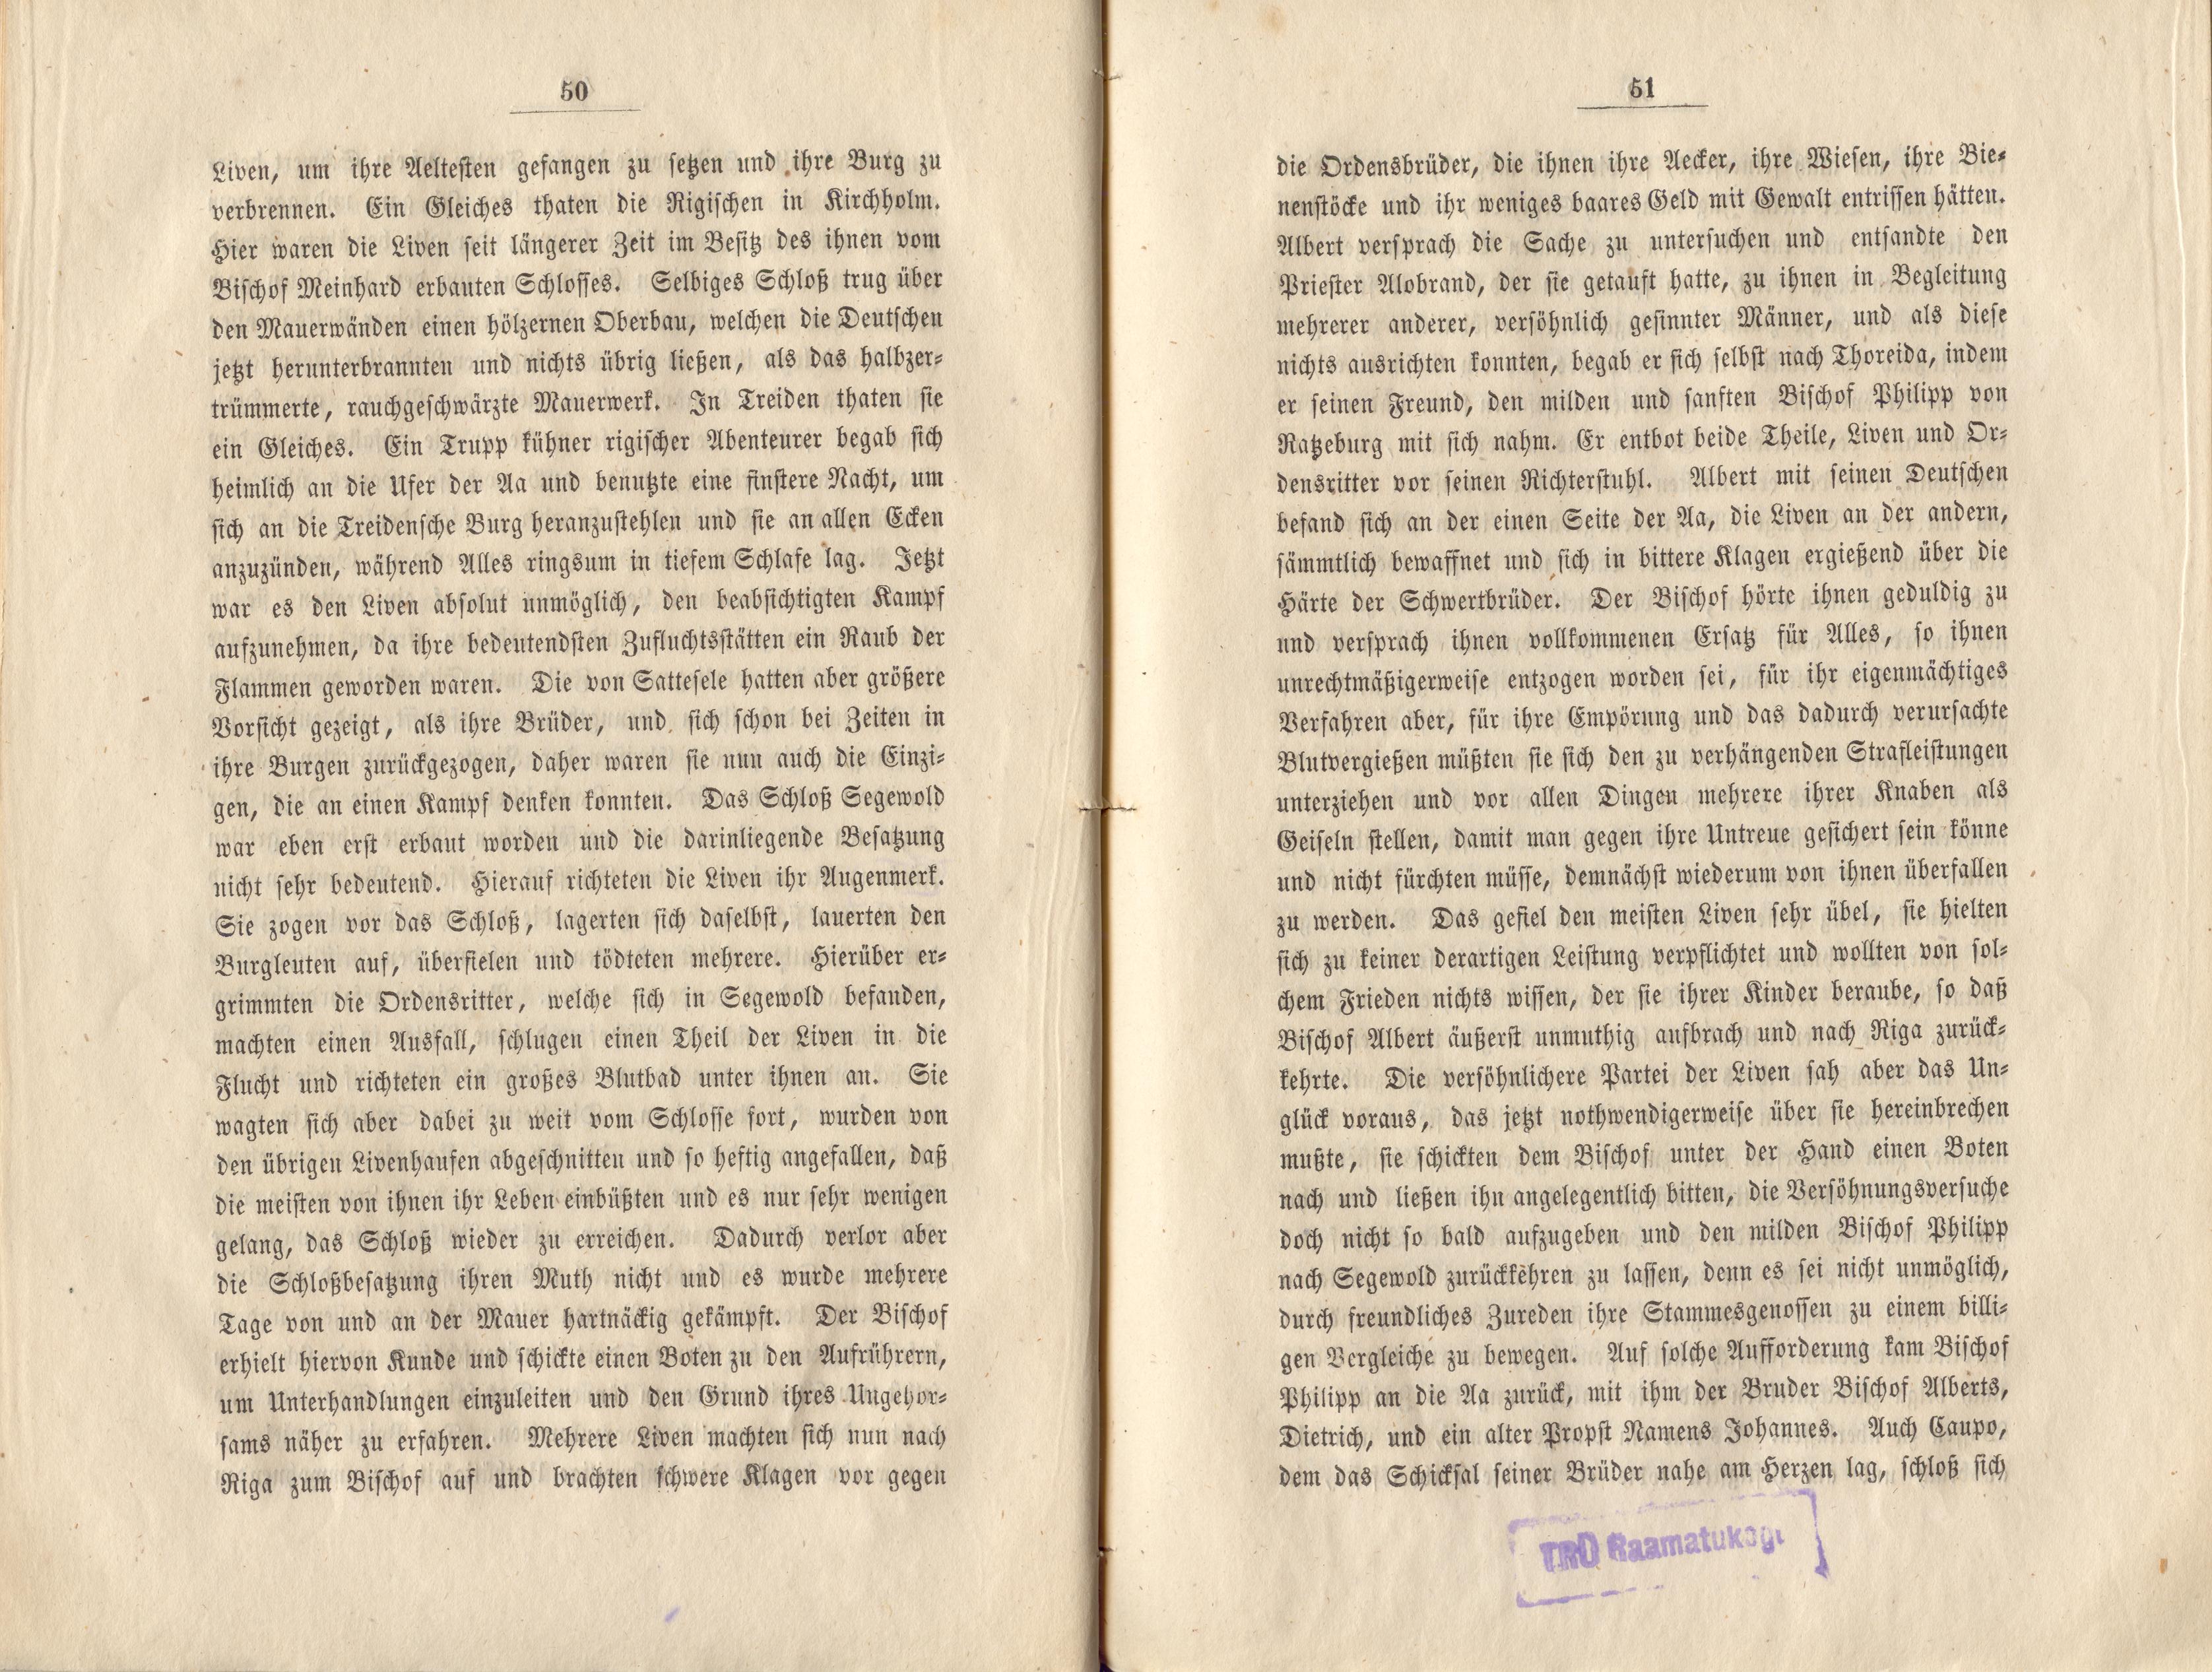 Felliner Blätter (1859) | 26. (50-51) Main body of text